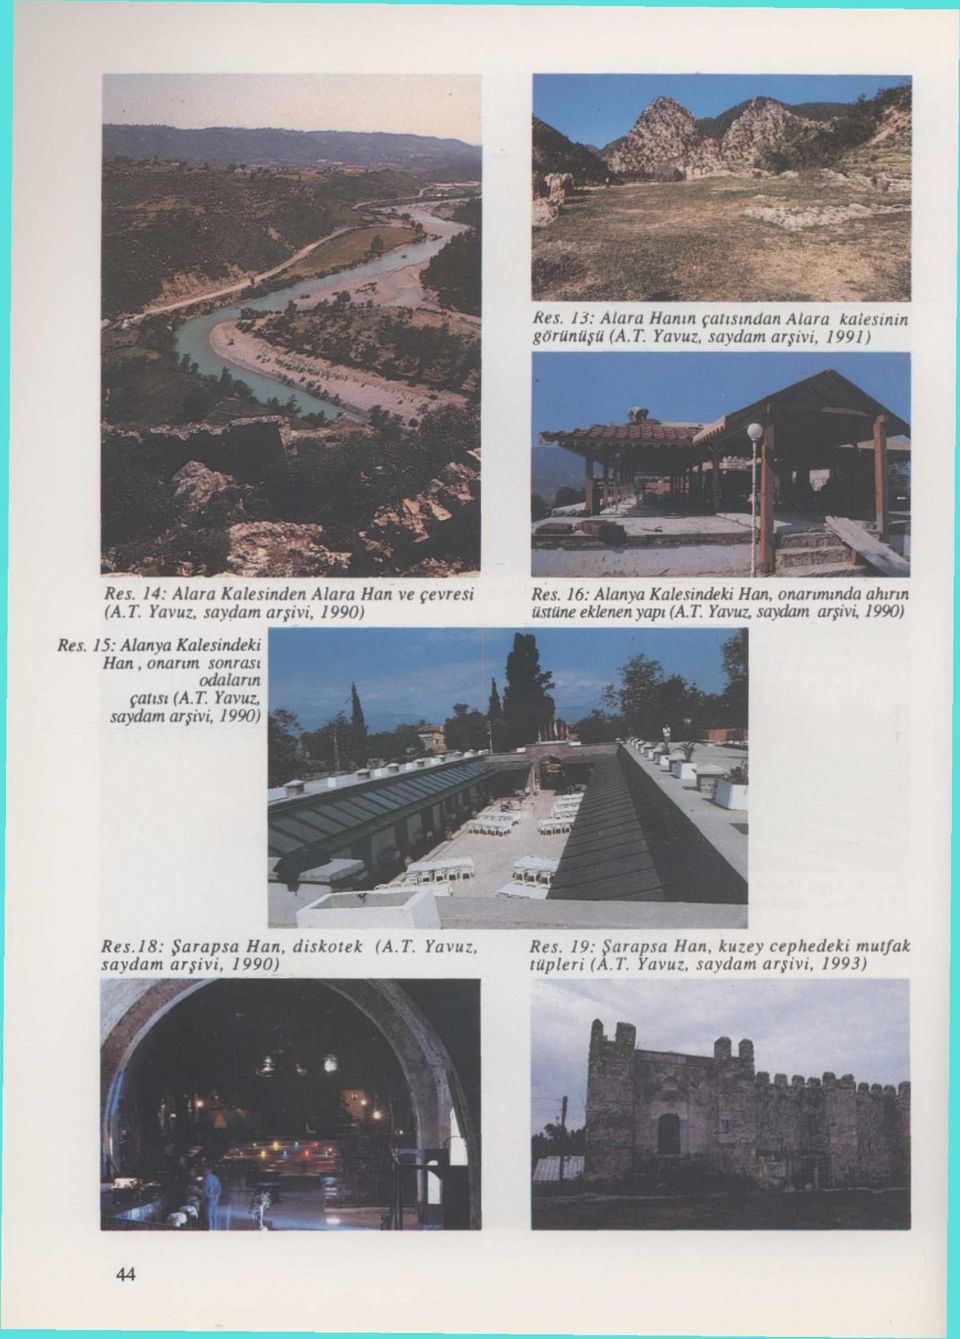 16: Alanya Kalesindeki Han, onarımında ahırın üstüne eklenen yapı (A.T. Yavuz, saydam arşivi, 1990) Res. 15: Alanya Kalesindeki Han.